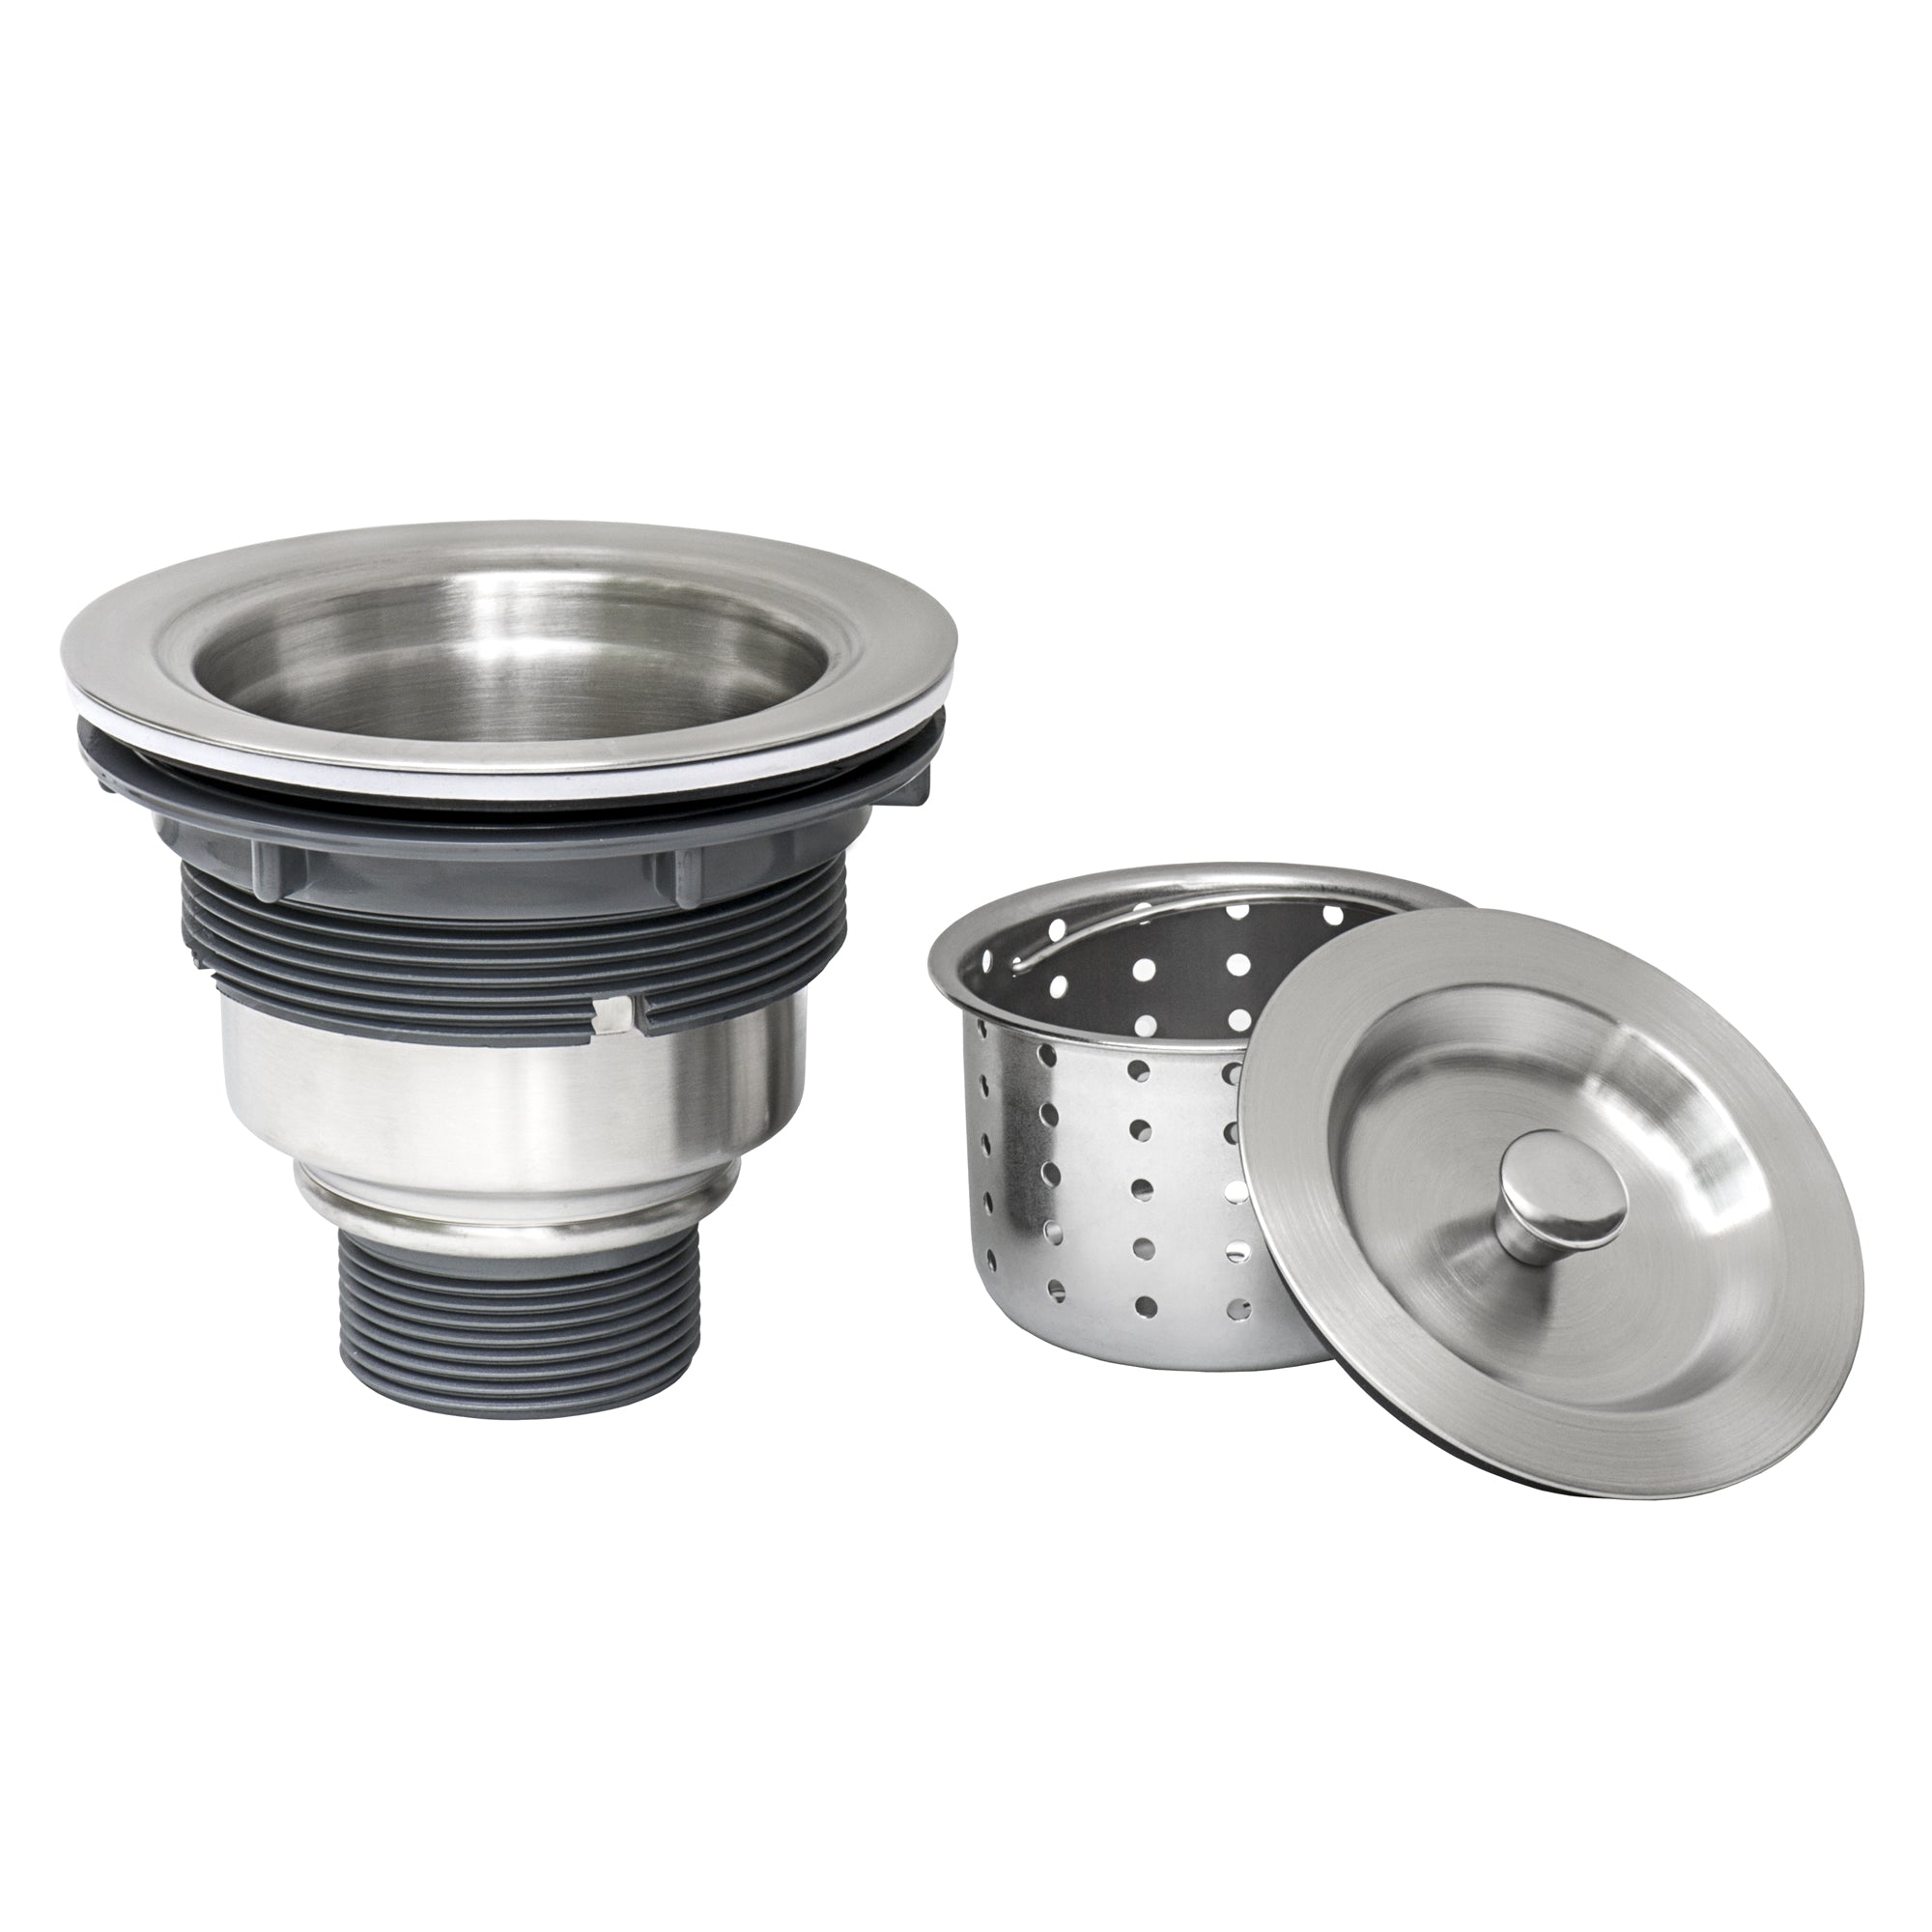 Ruvati RVA1025 Kitchen Sink Basket Strainer – Stainless Steel